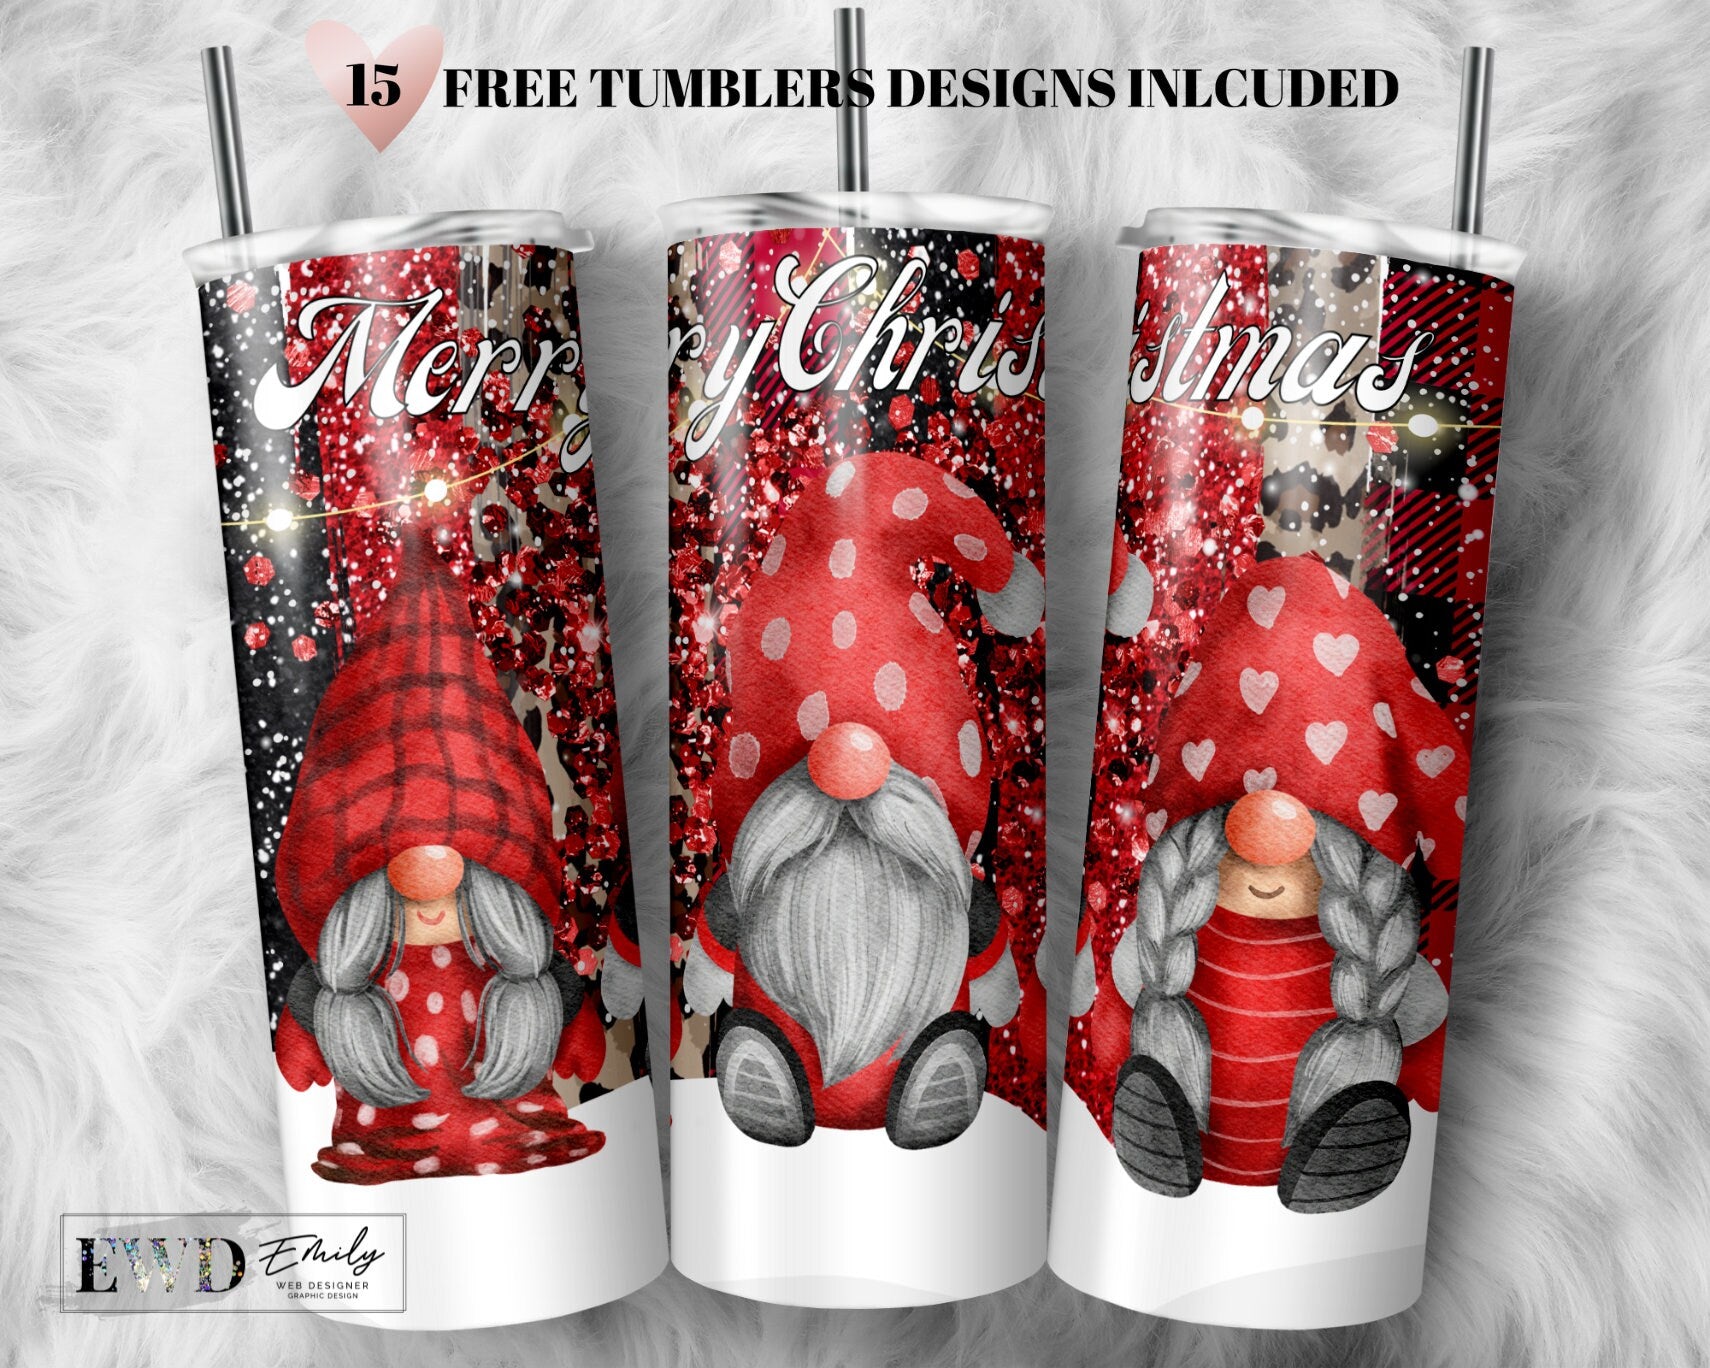 3D Red Panda Tumbler, Sublimation 20 oz Skinny Tumbler Design By Enliven  Designs